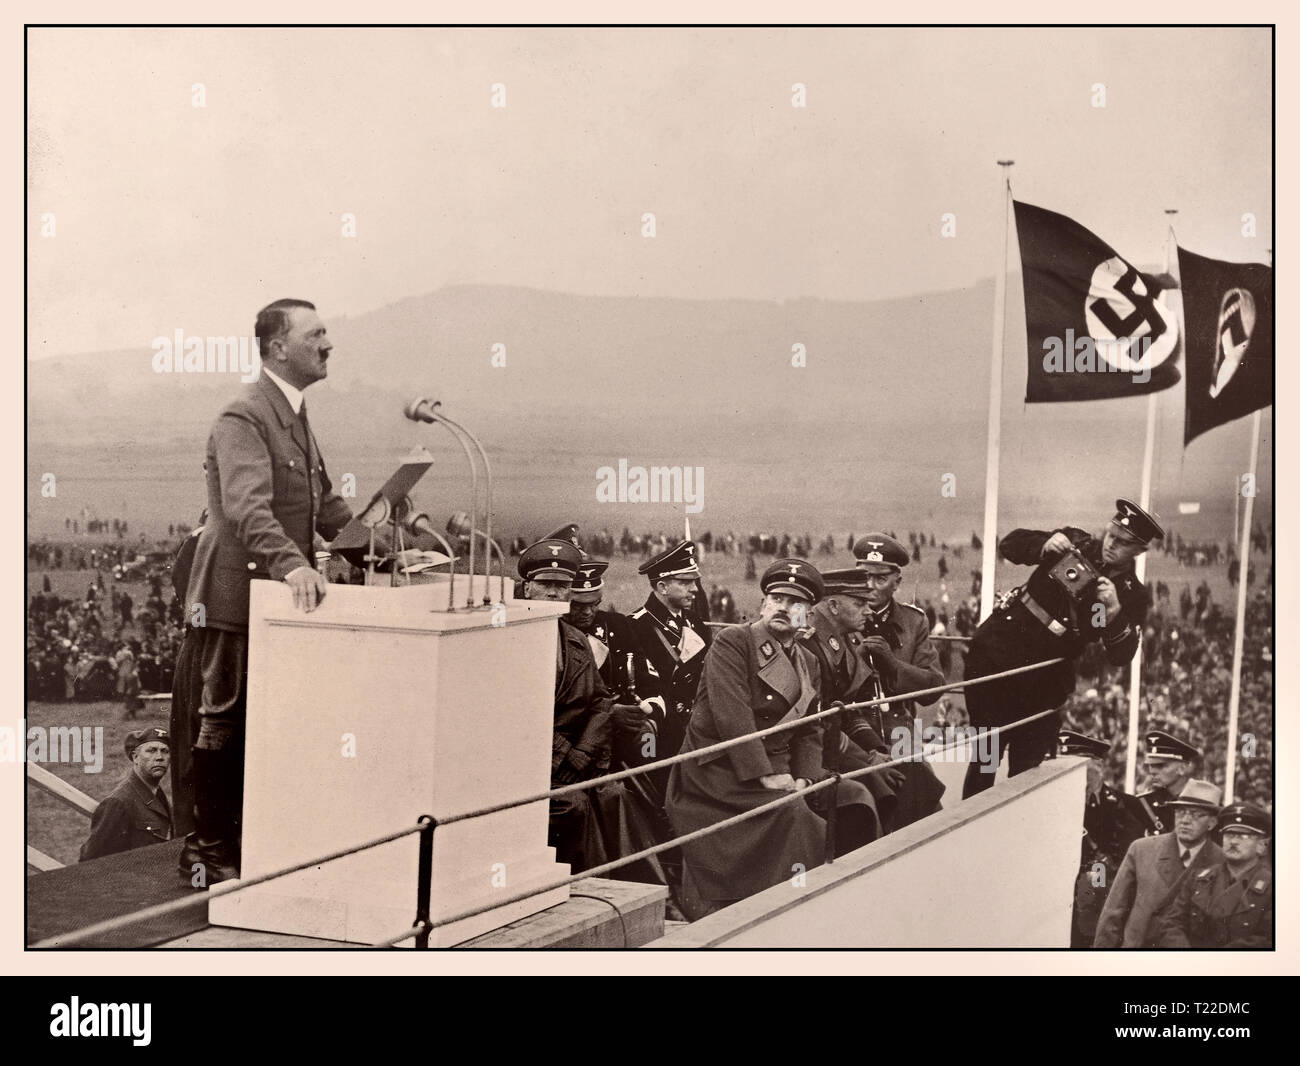 Vintage degli anni trenta immagine di Adolf Hitler con bandiere con la svastica, facendo un discorso formale da un podio al di fuori - politico e statista della Germania nazista il Cancelliere del Reich in 1933-1945, leader della nazionale socialista Partito dei Lavoratori di Germania Foto Stock